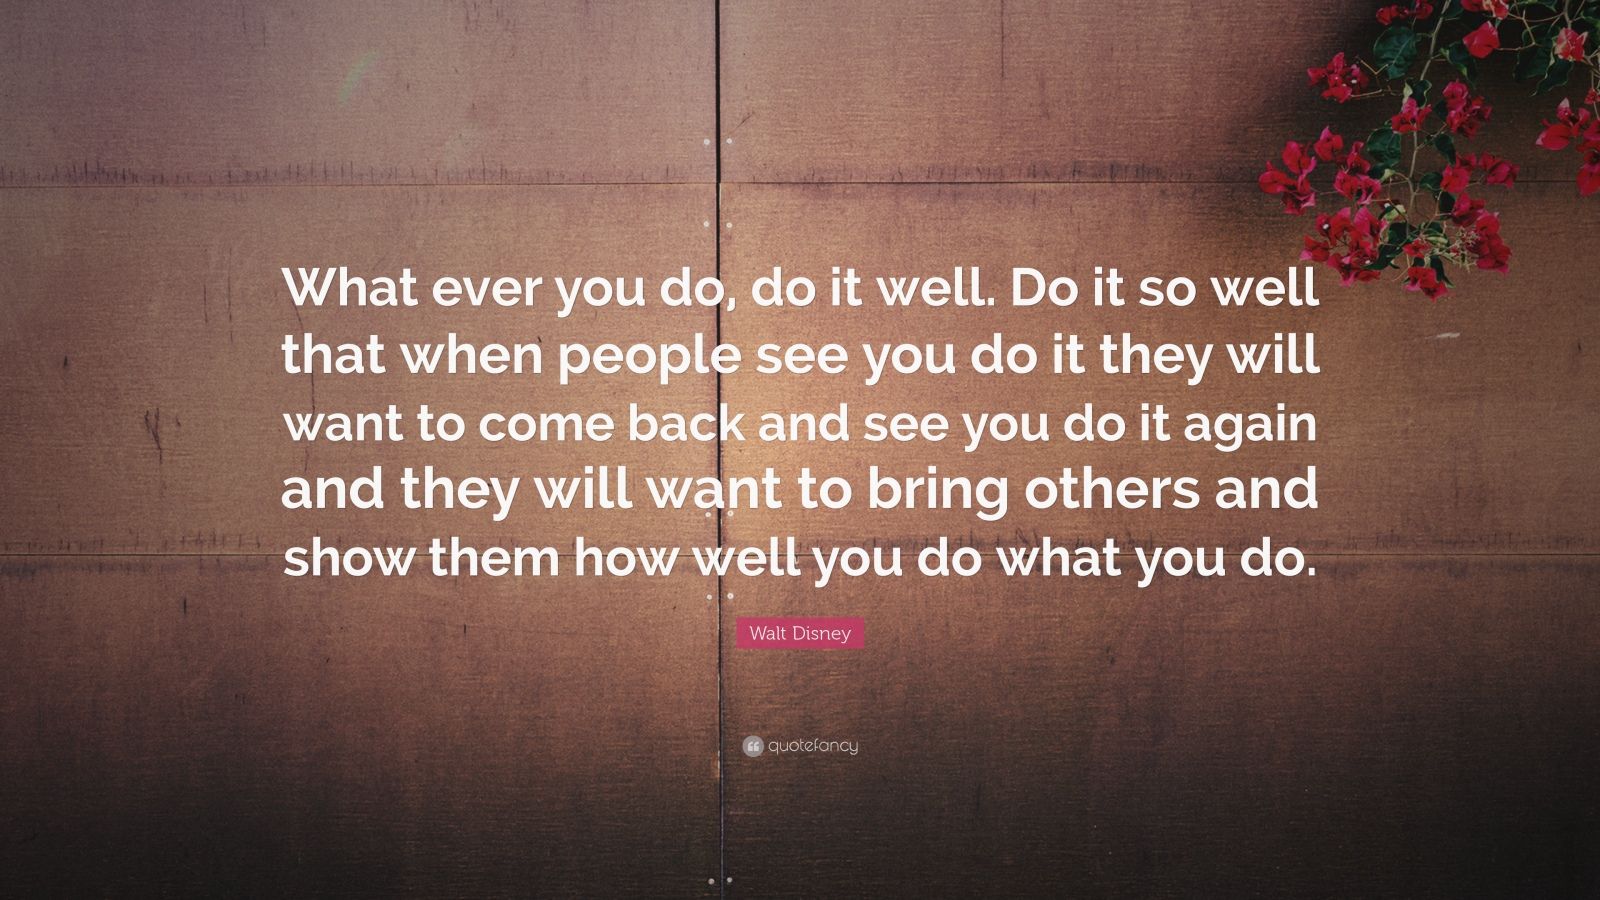 Walt Disney Quotes (26 wallpapers) - Quotefancy